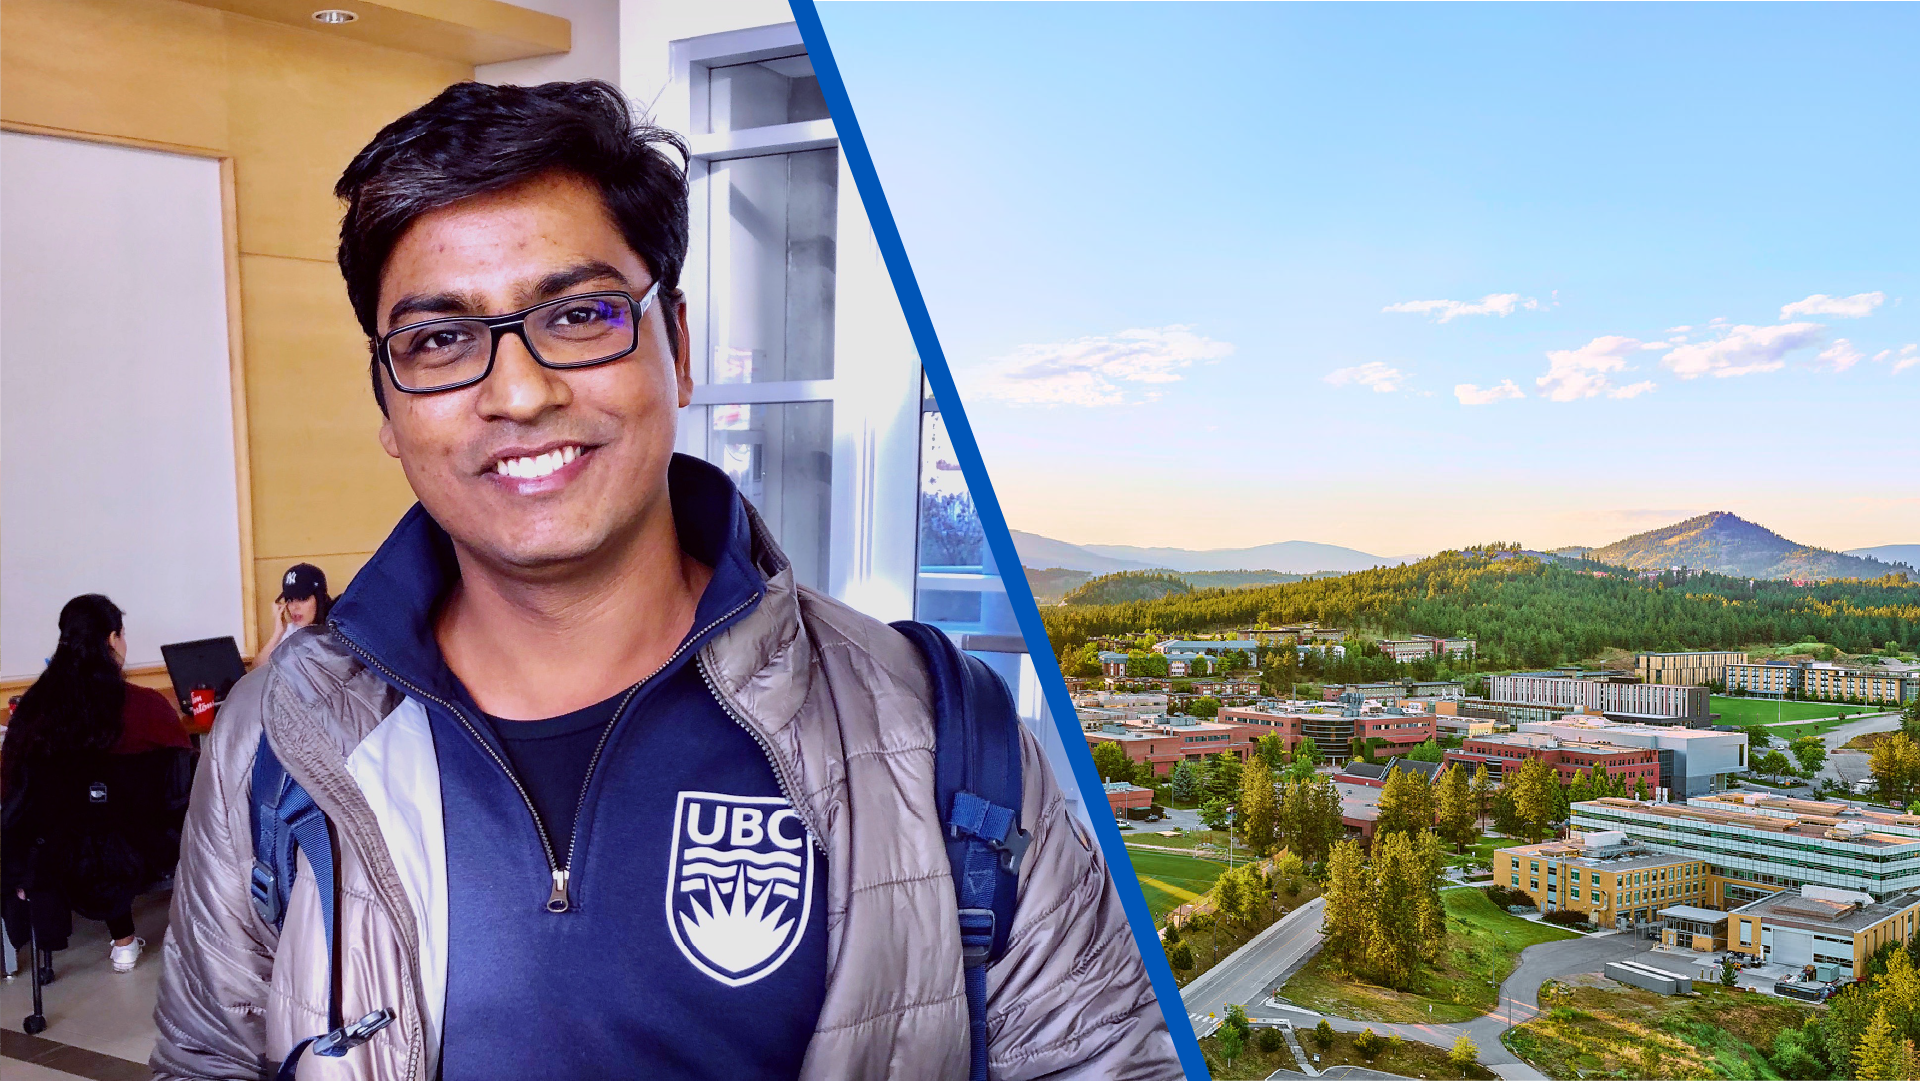 Photo of Manish Kumar next to an image of the UBC Okanagan campus.